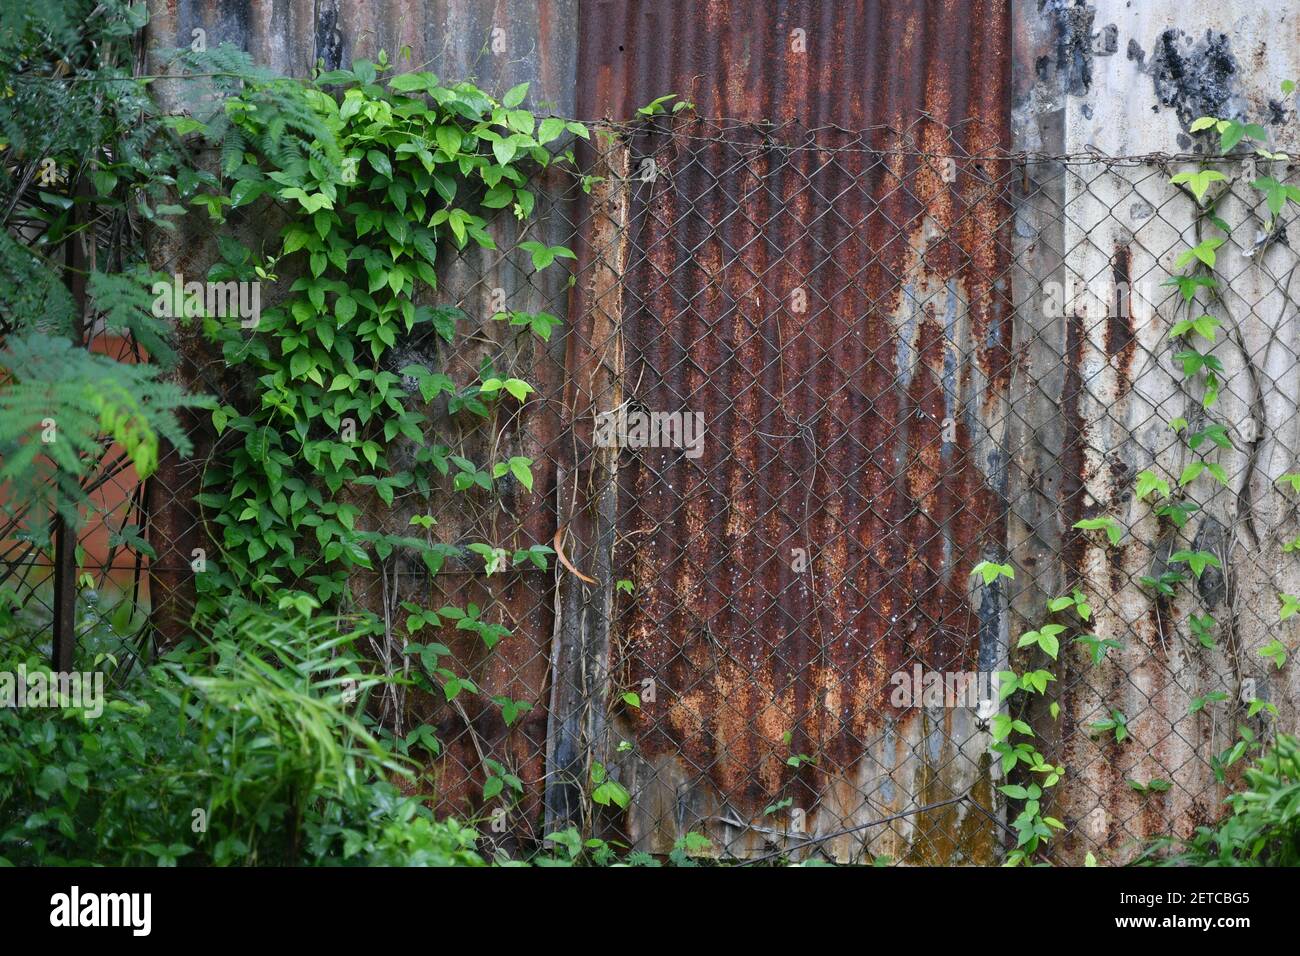 Les plantes et les feuilles de vigne poussent sur une vieille clôture en étain rouillé. Banque D'Images